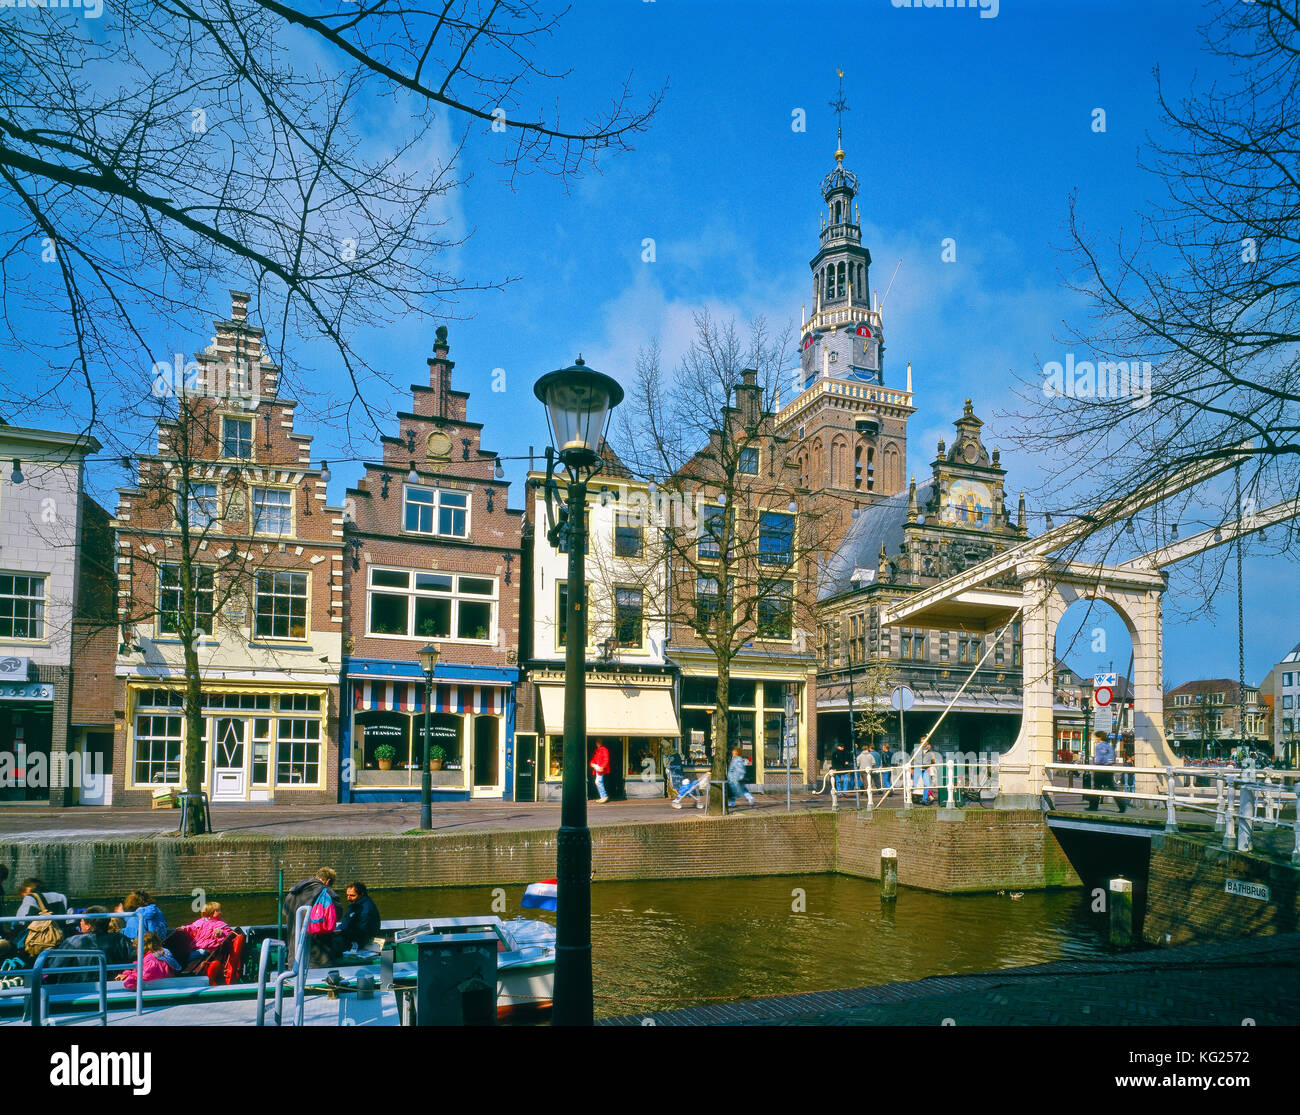 De waag alkmaar netherlands hi-res stock photography and images - Alamy